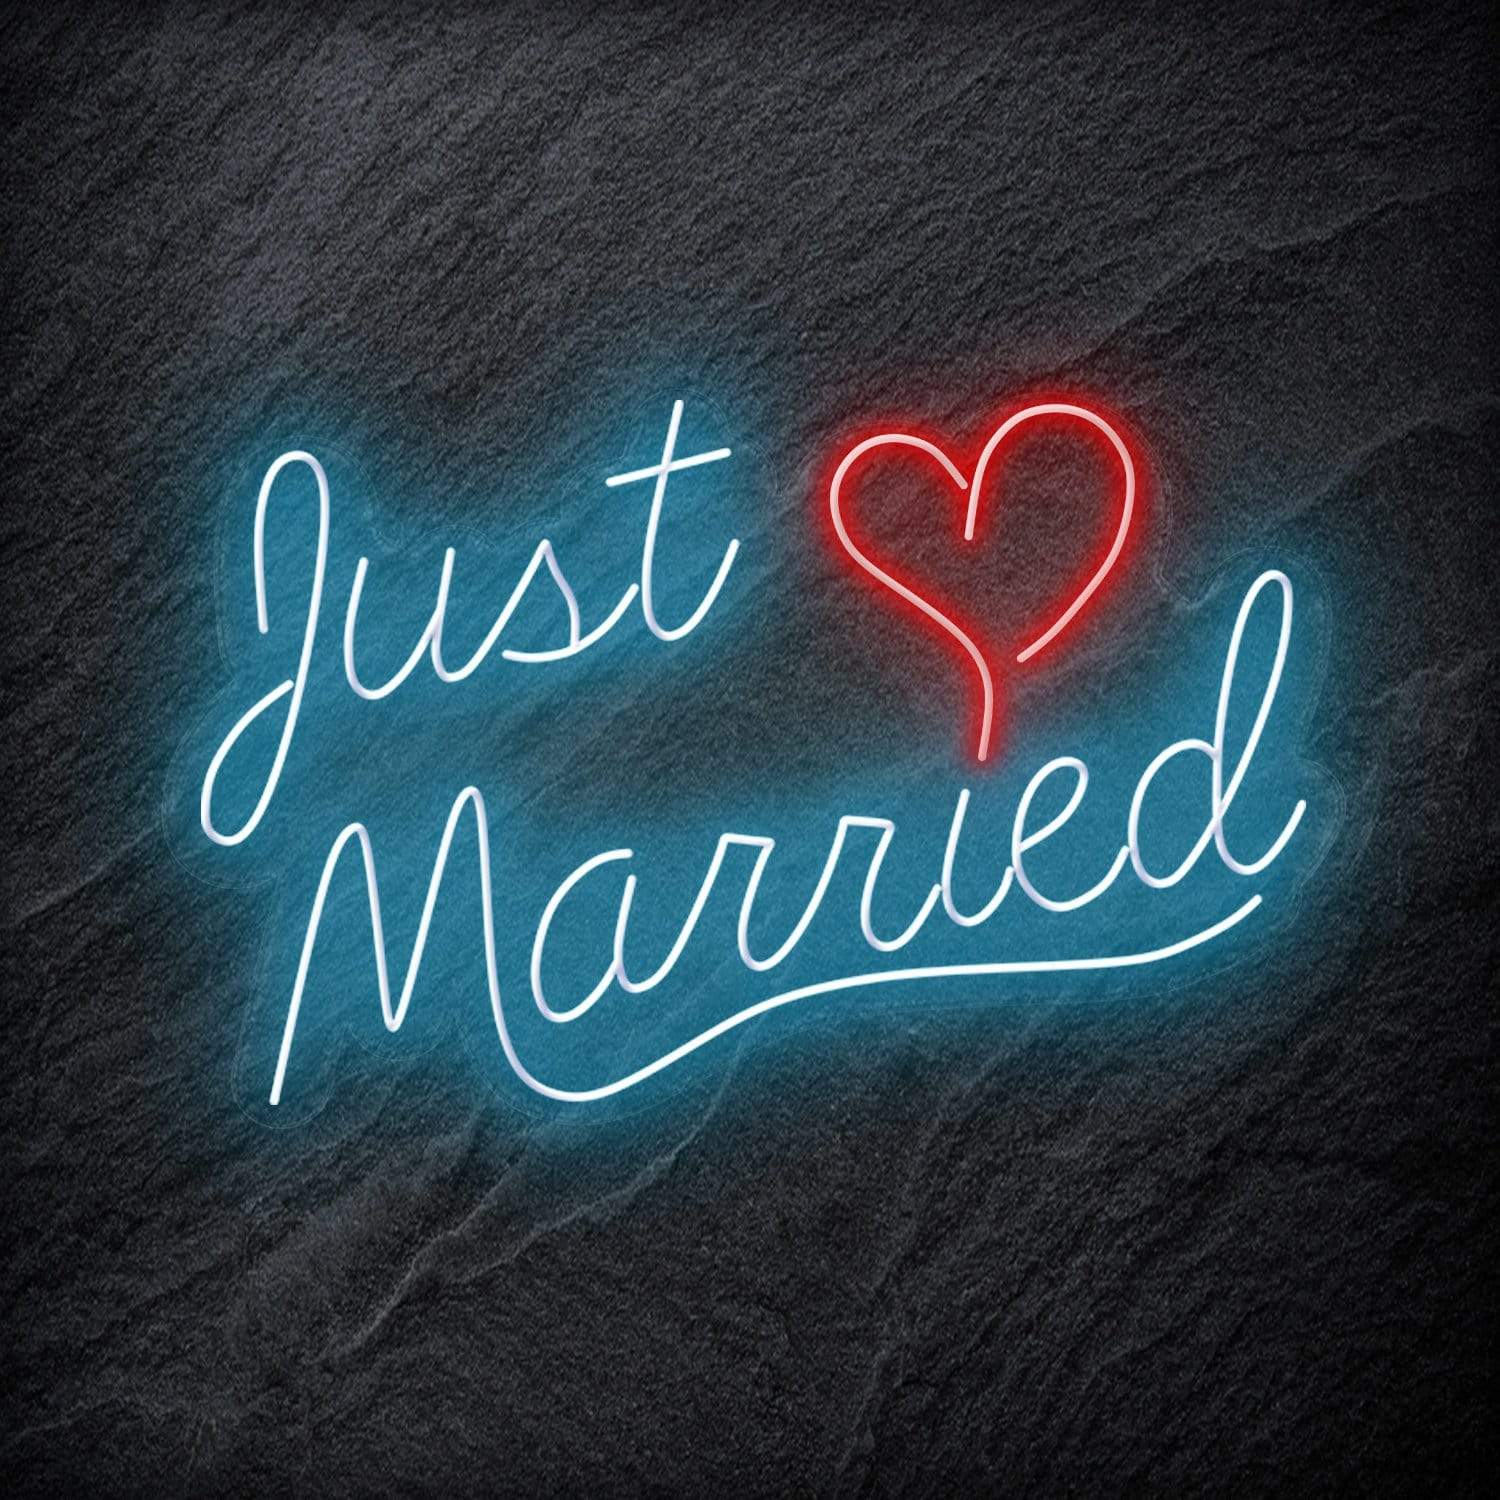 "Just Married" LED Neon Schriftzug - NEONEVERGLOW